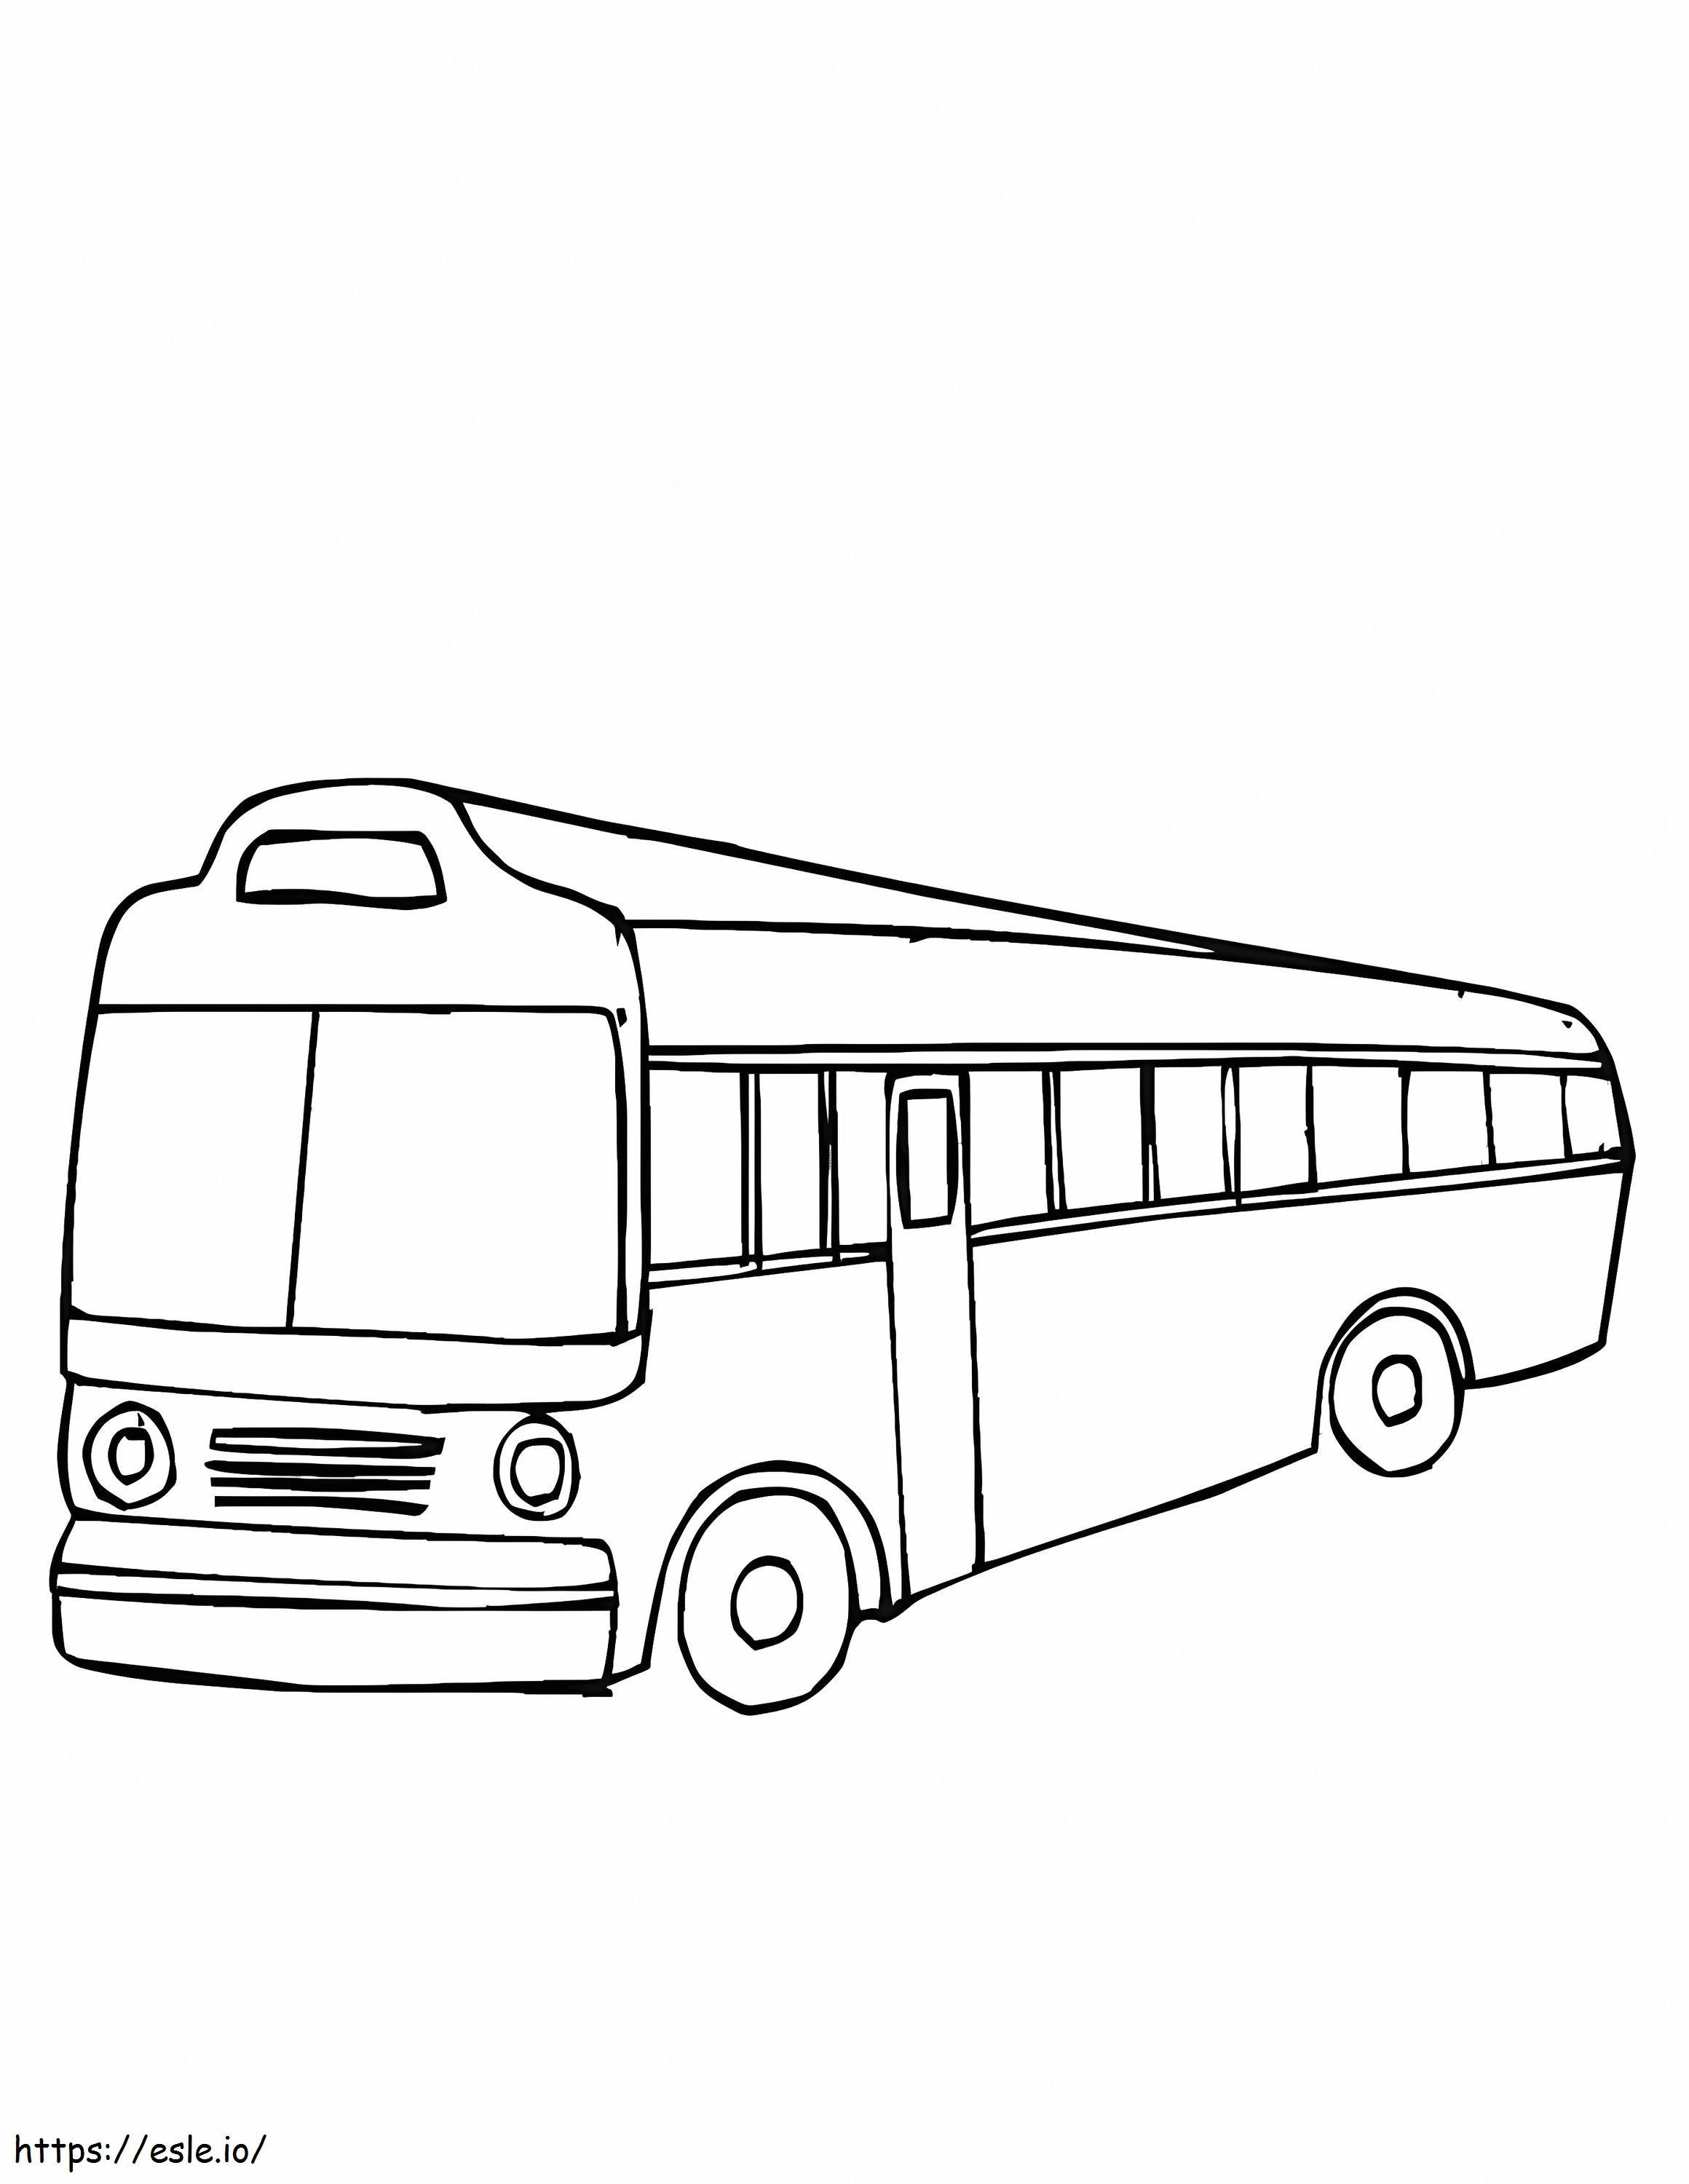 Coloriage Autobus Simple à imprimer dessin